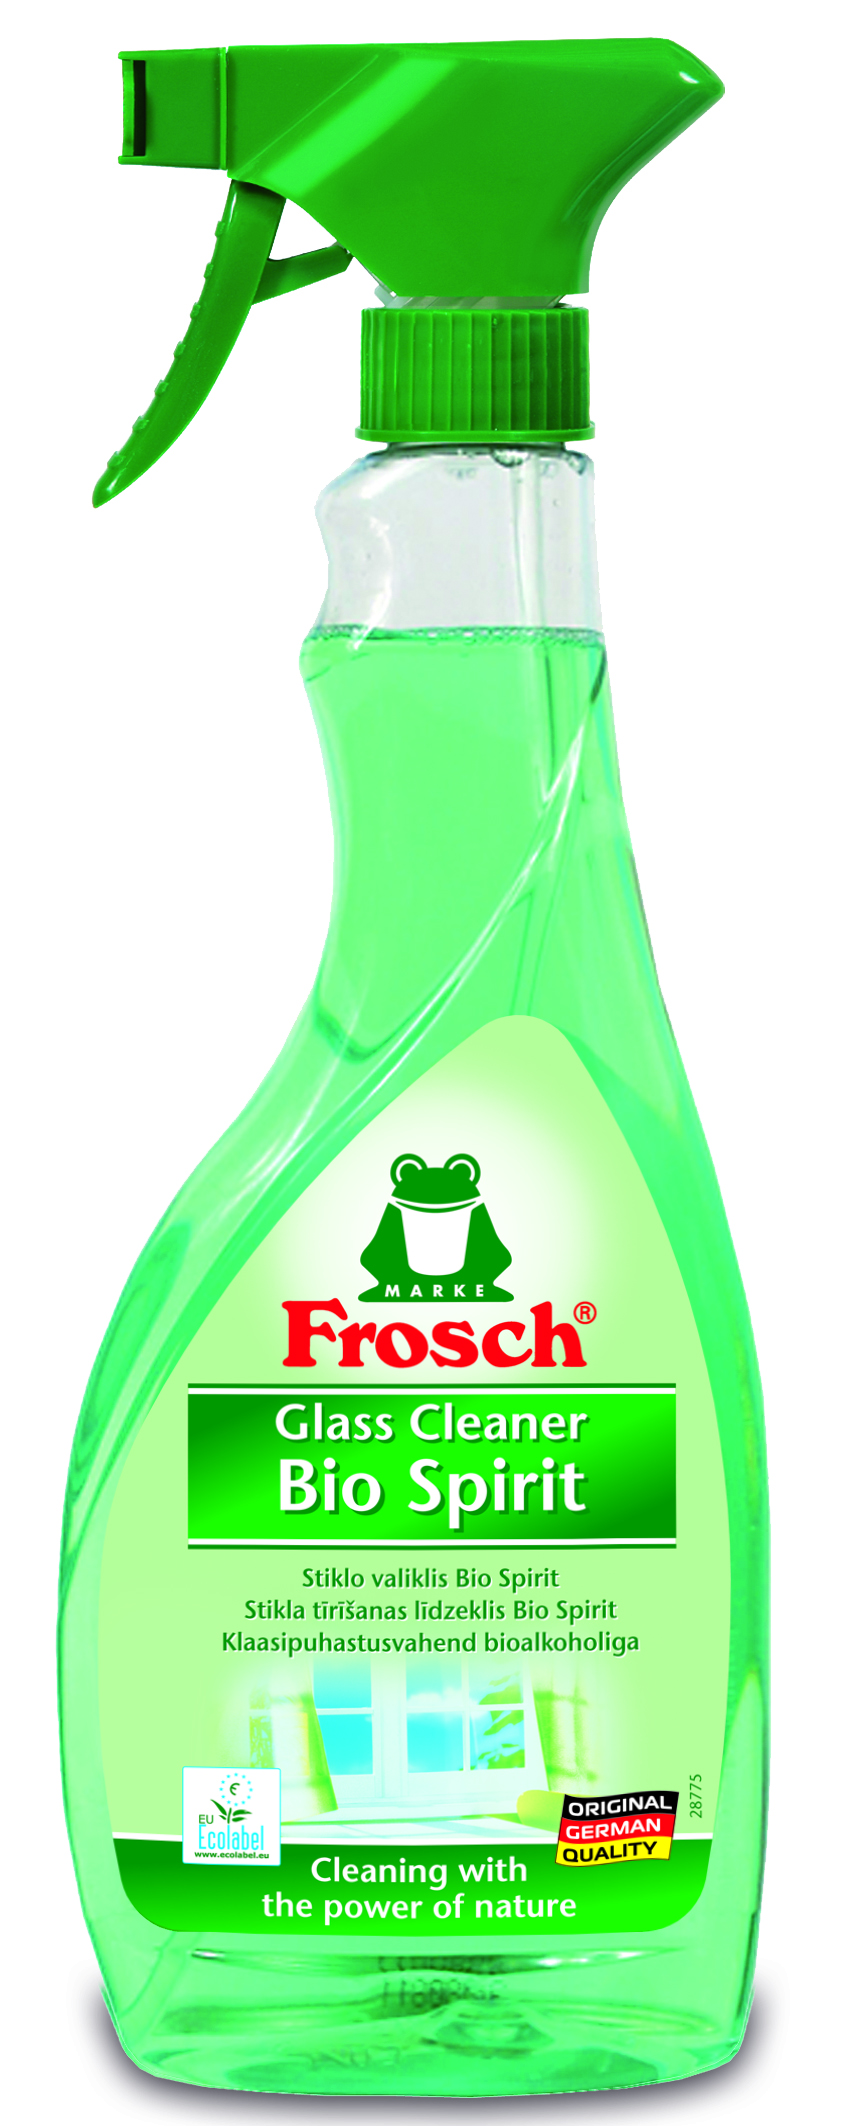 Очиститель для стеклянных и зеркальных поверхностей Frosch, спиртовой, 500 мл - фото 1